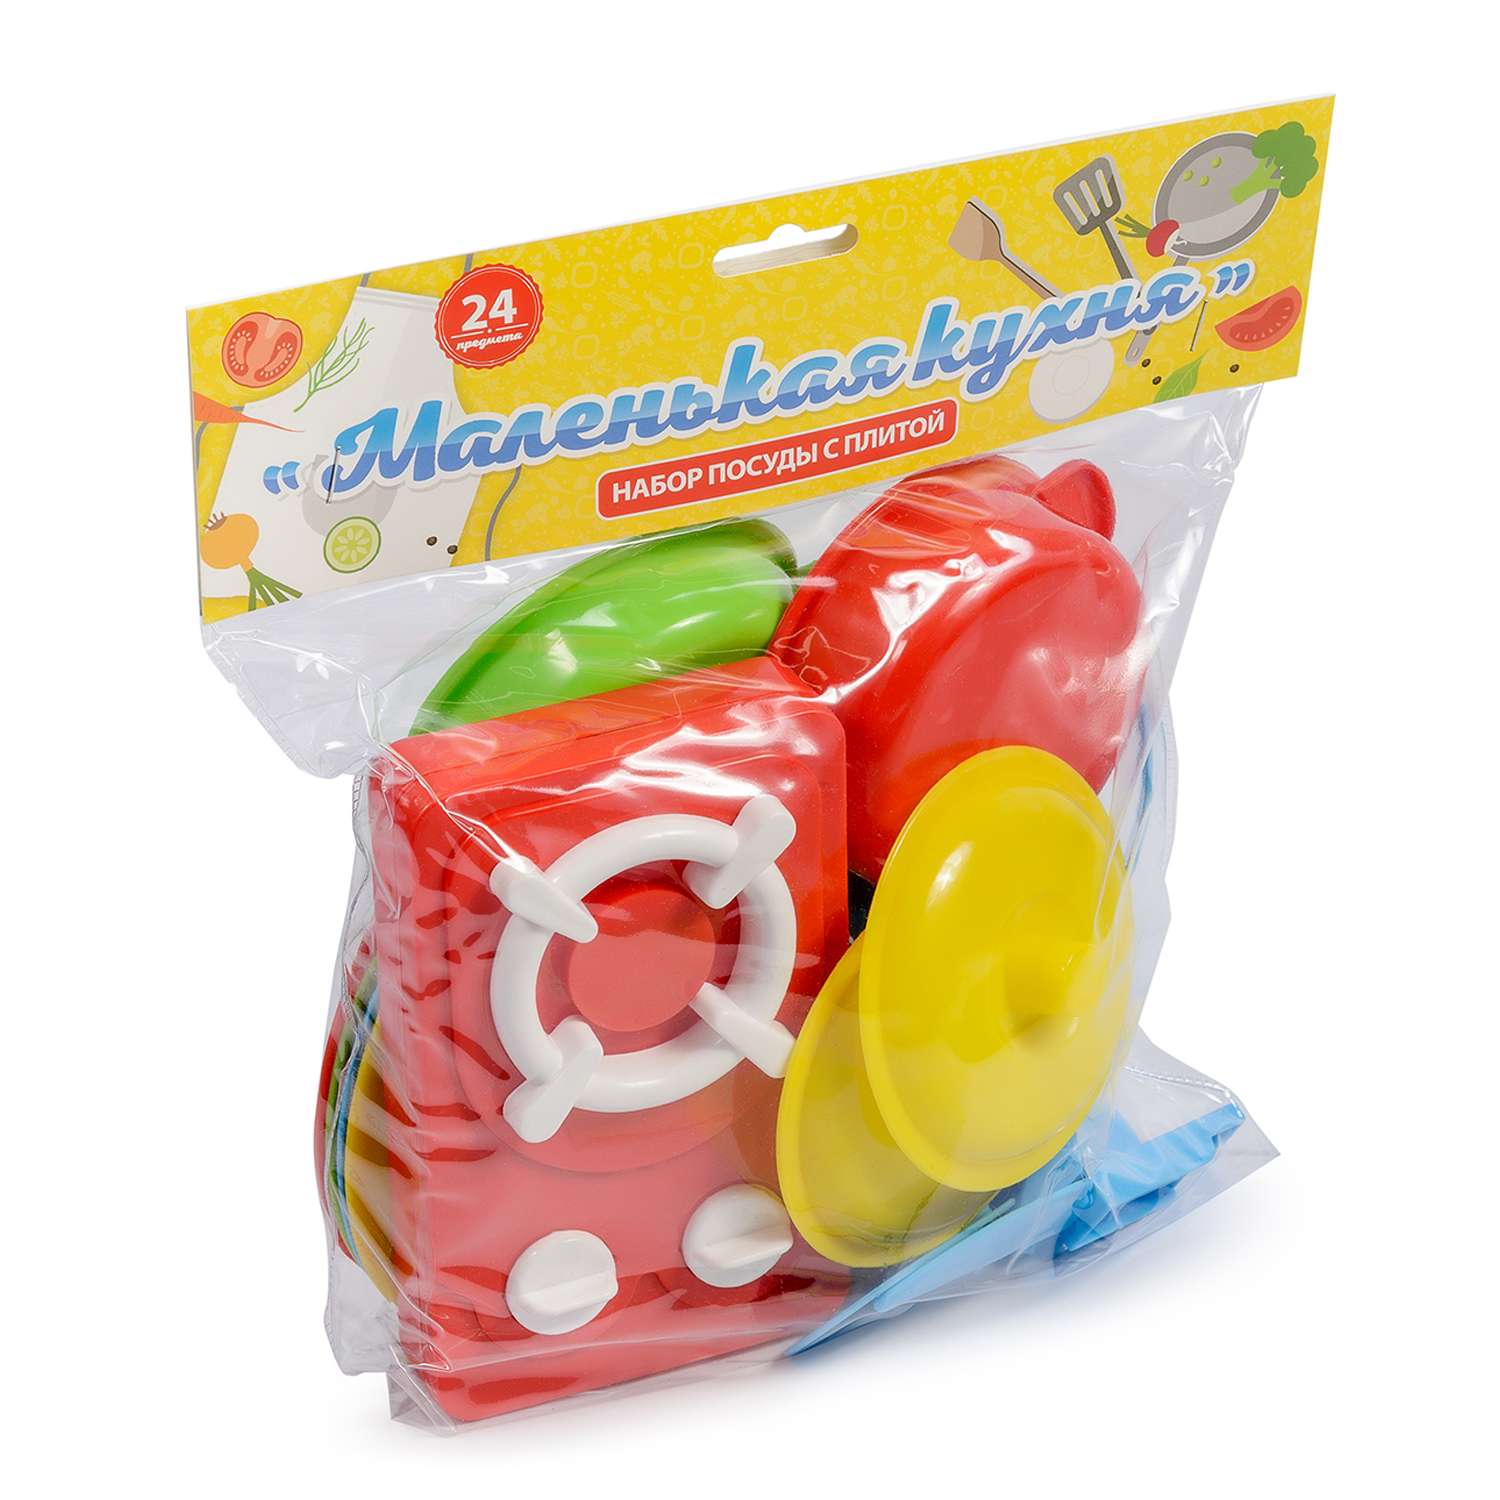 Игровой набор для кухни Green Plast детская игрушечная посудка с плитой 24 предмета - фото 3